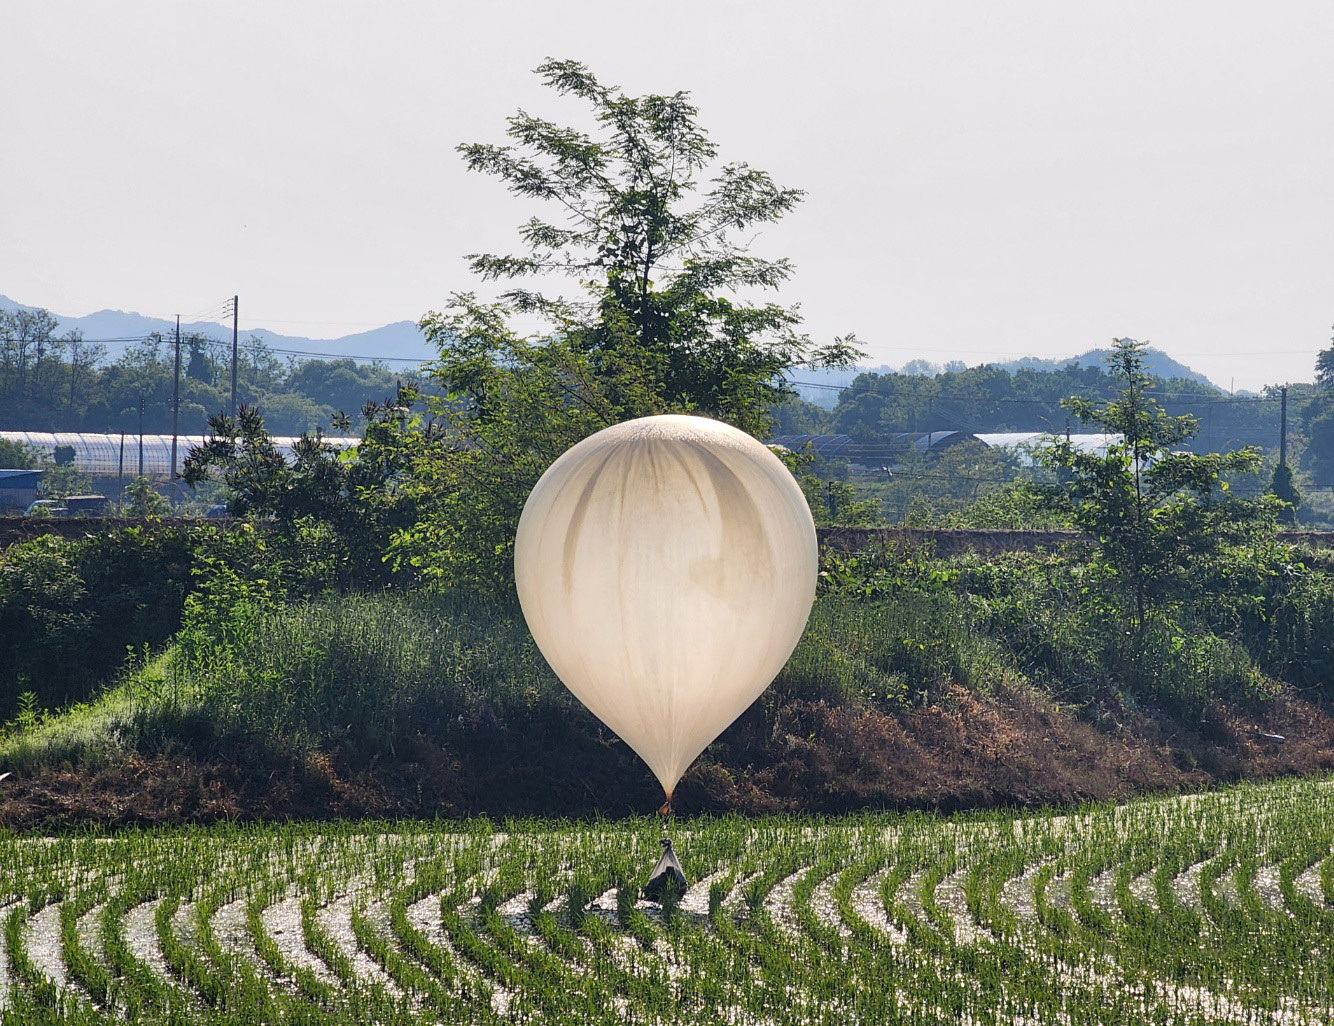 Η Βόρεια Κορέα τερματίζει «προσωρινά» την αποστολή μπαλονιών με ακαθαρσίες στην Νότια Κορέα